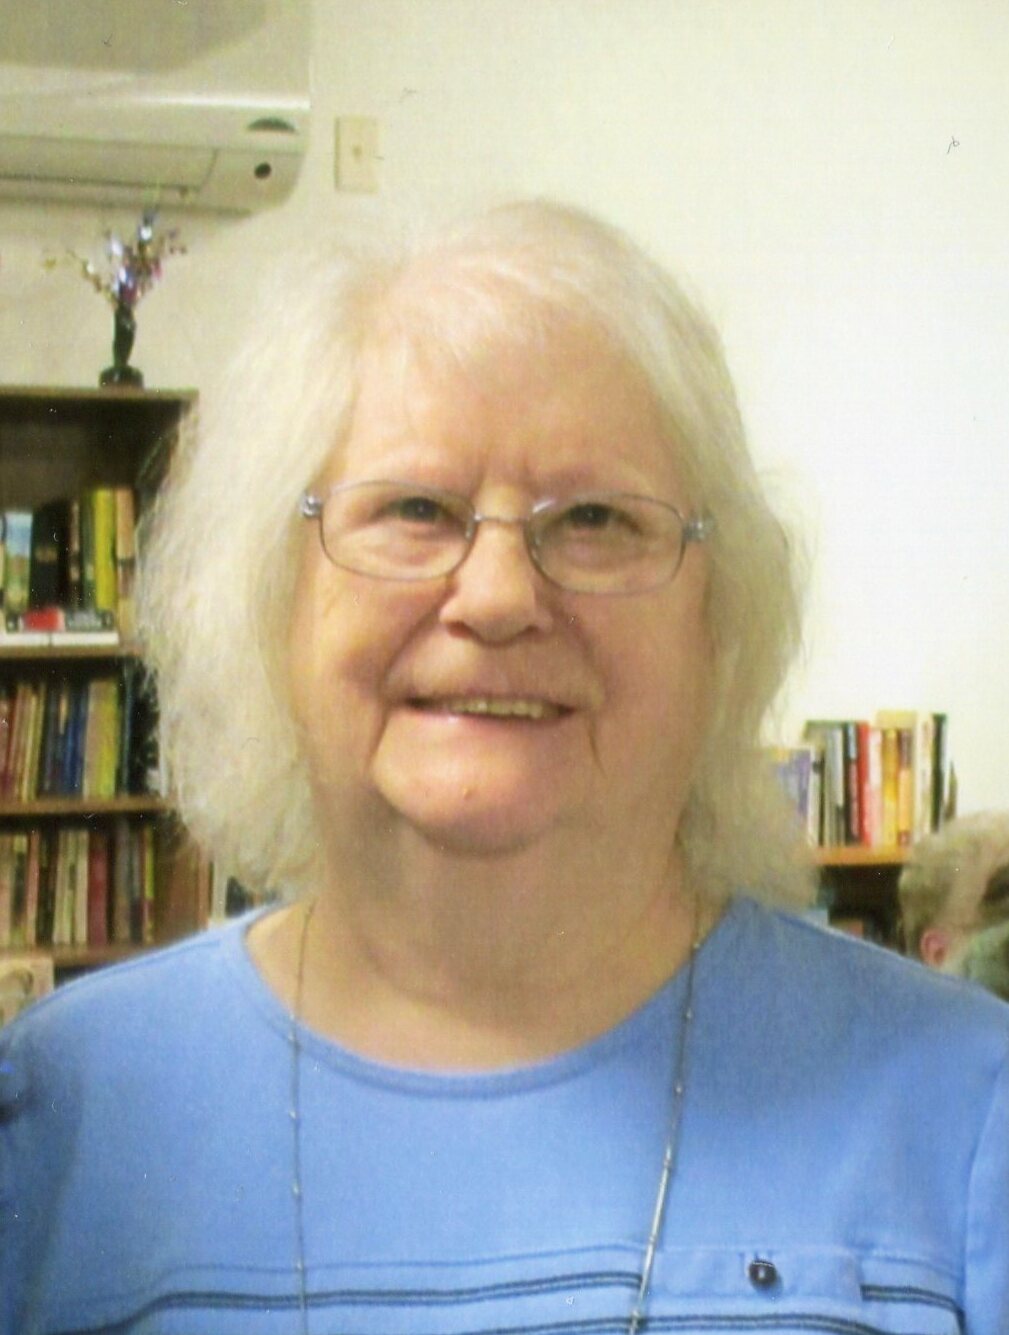 Lois Johnson